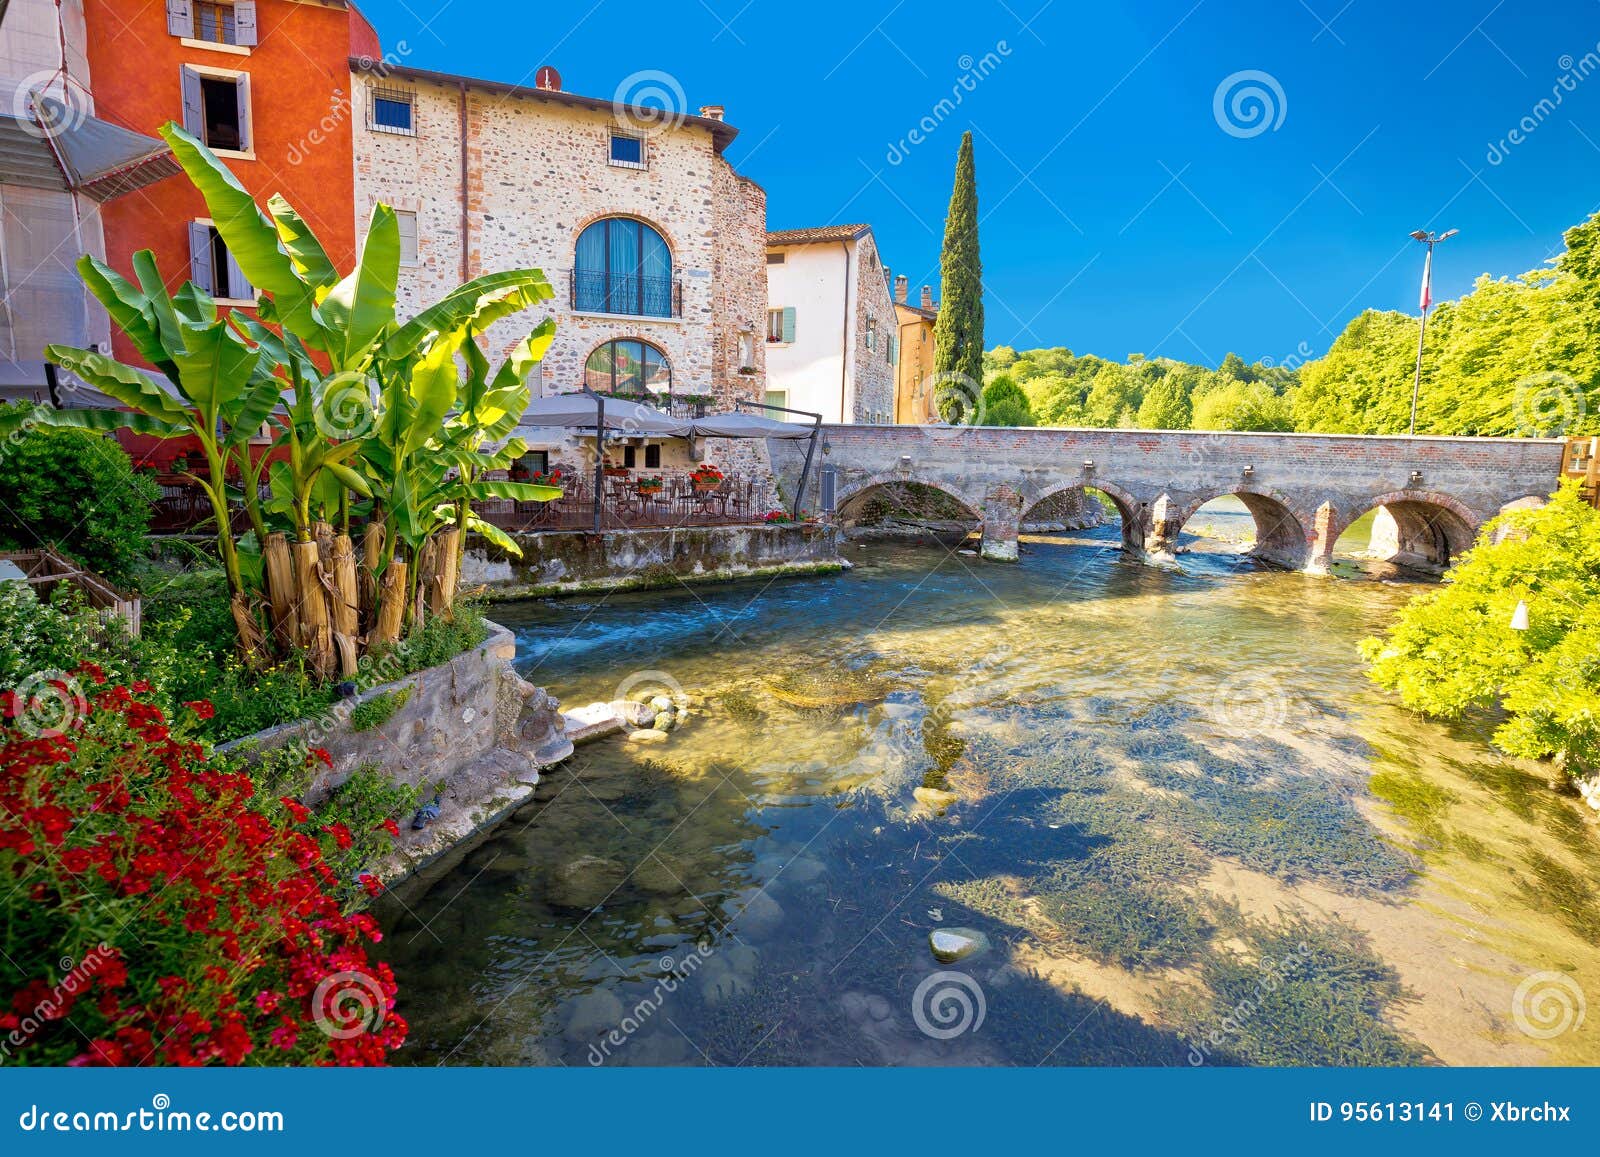 idyllic italian village of borghetto on mincio river view